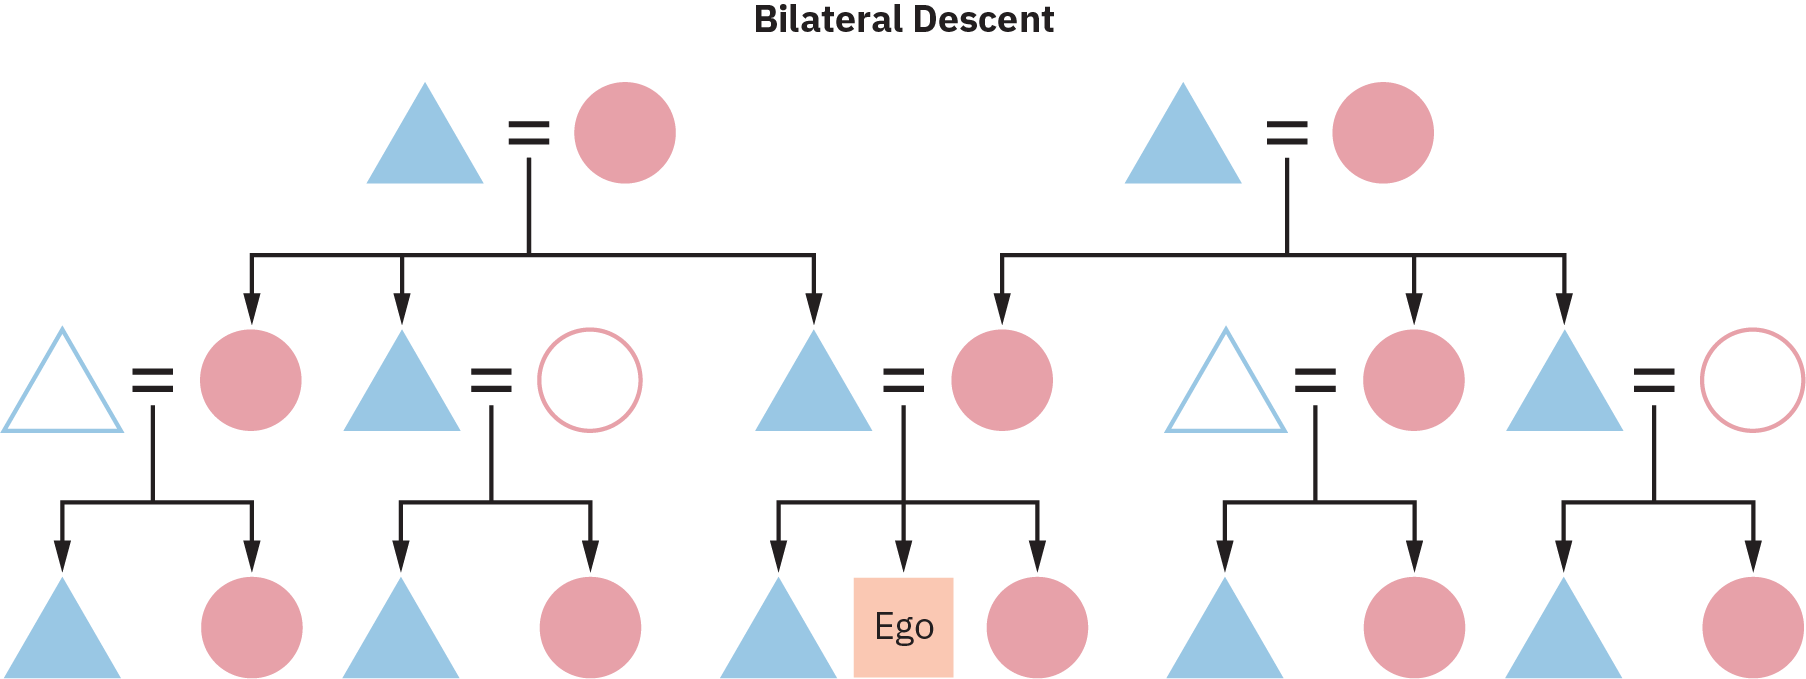 Um gráfico de descendência bilateral de várias gerações. Todos os filhos neste gráfico traçam sua linhagem por meio da mãe e do pai.